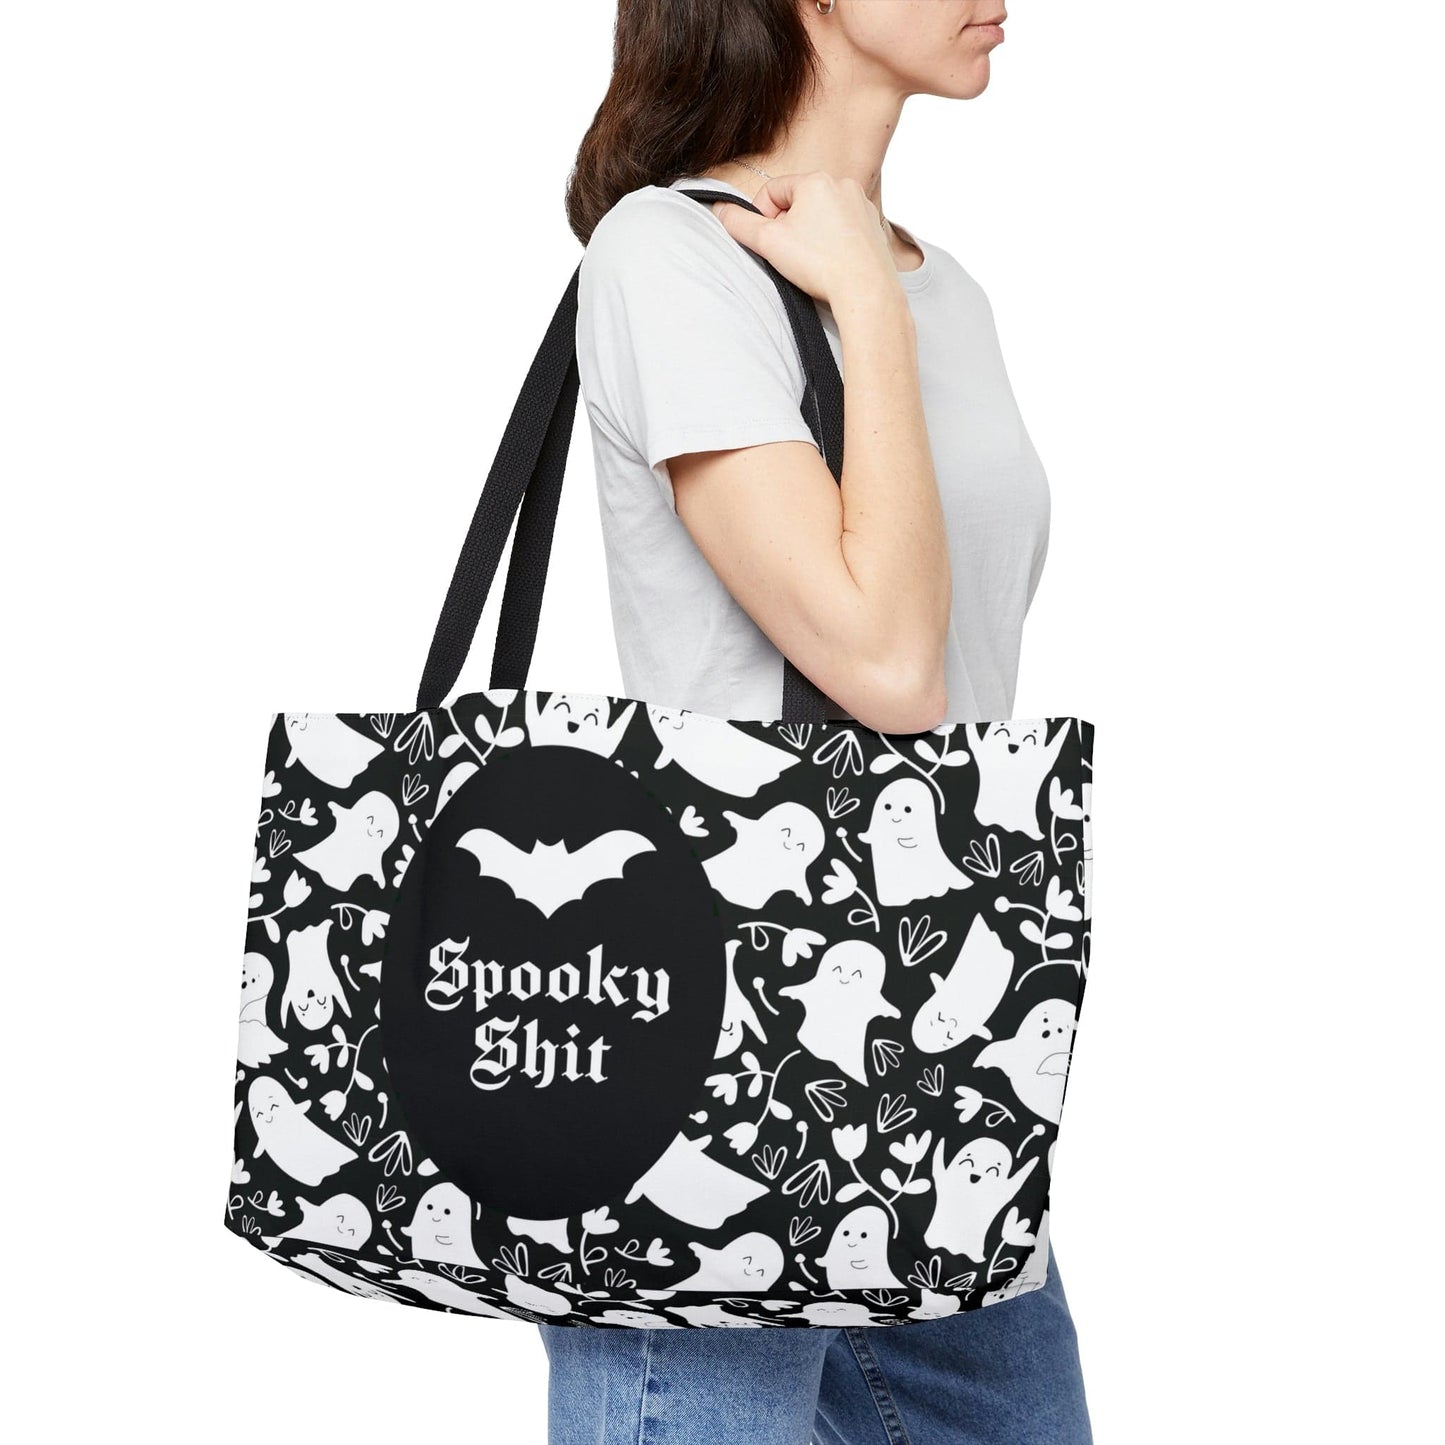 Ghost Spooky Shit Weekender Tote Bag